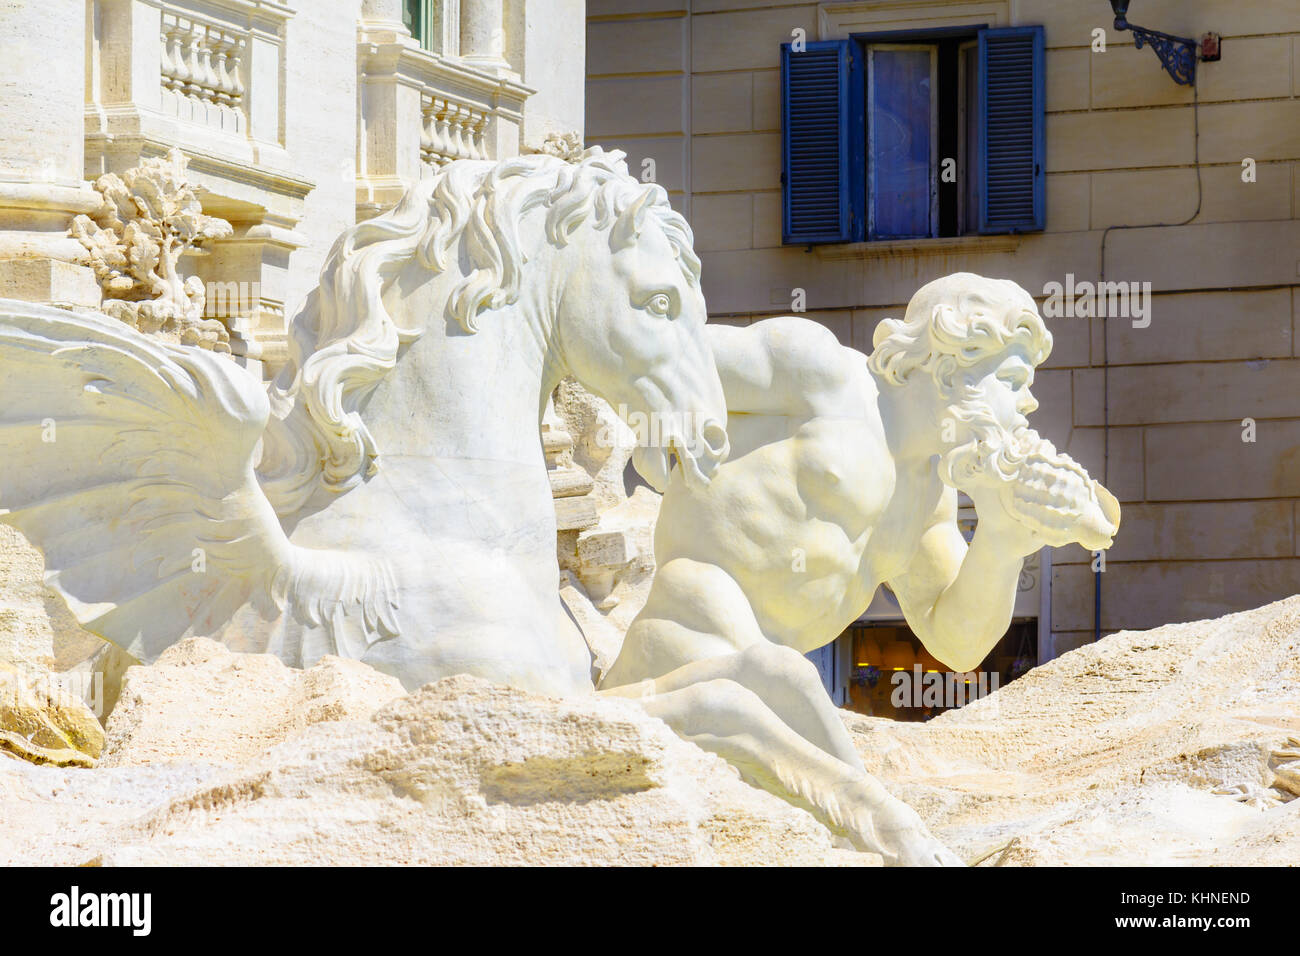 Dettagli architettonici di Fontana di Trevi , Fontana di Trevi, una fontana nel rione Trevi a Roma, Italia, la più grande fontana barocca della città. Foto Stock